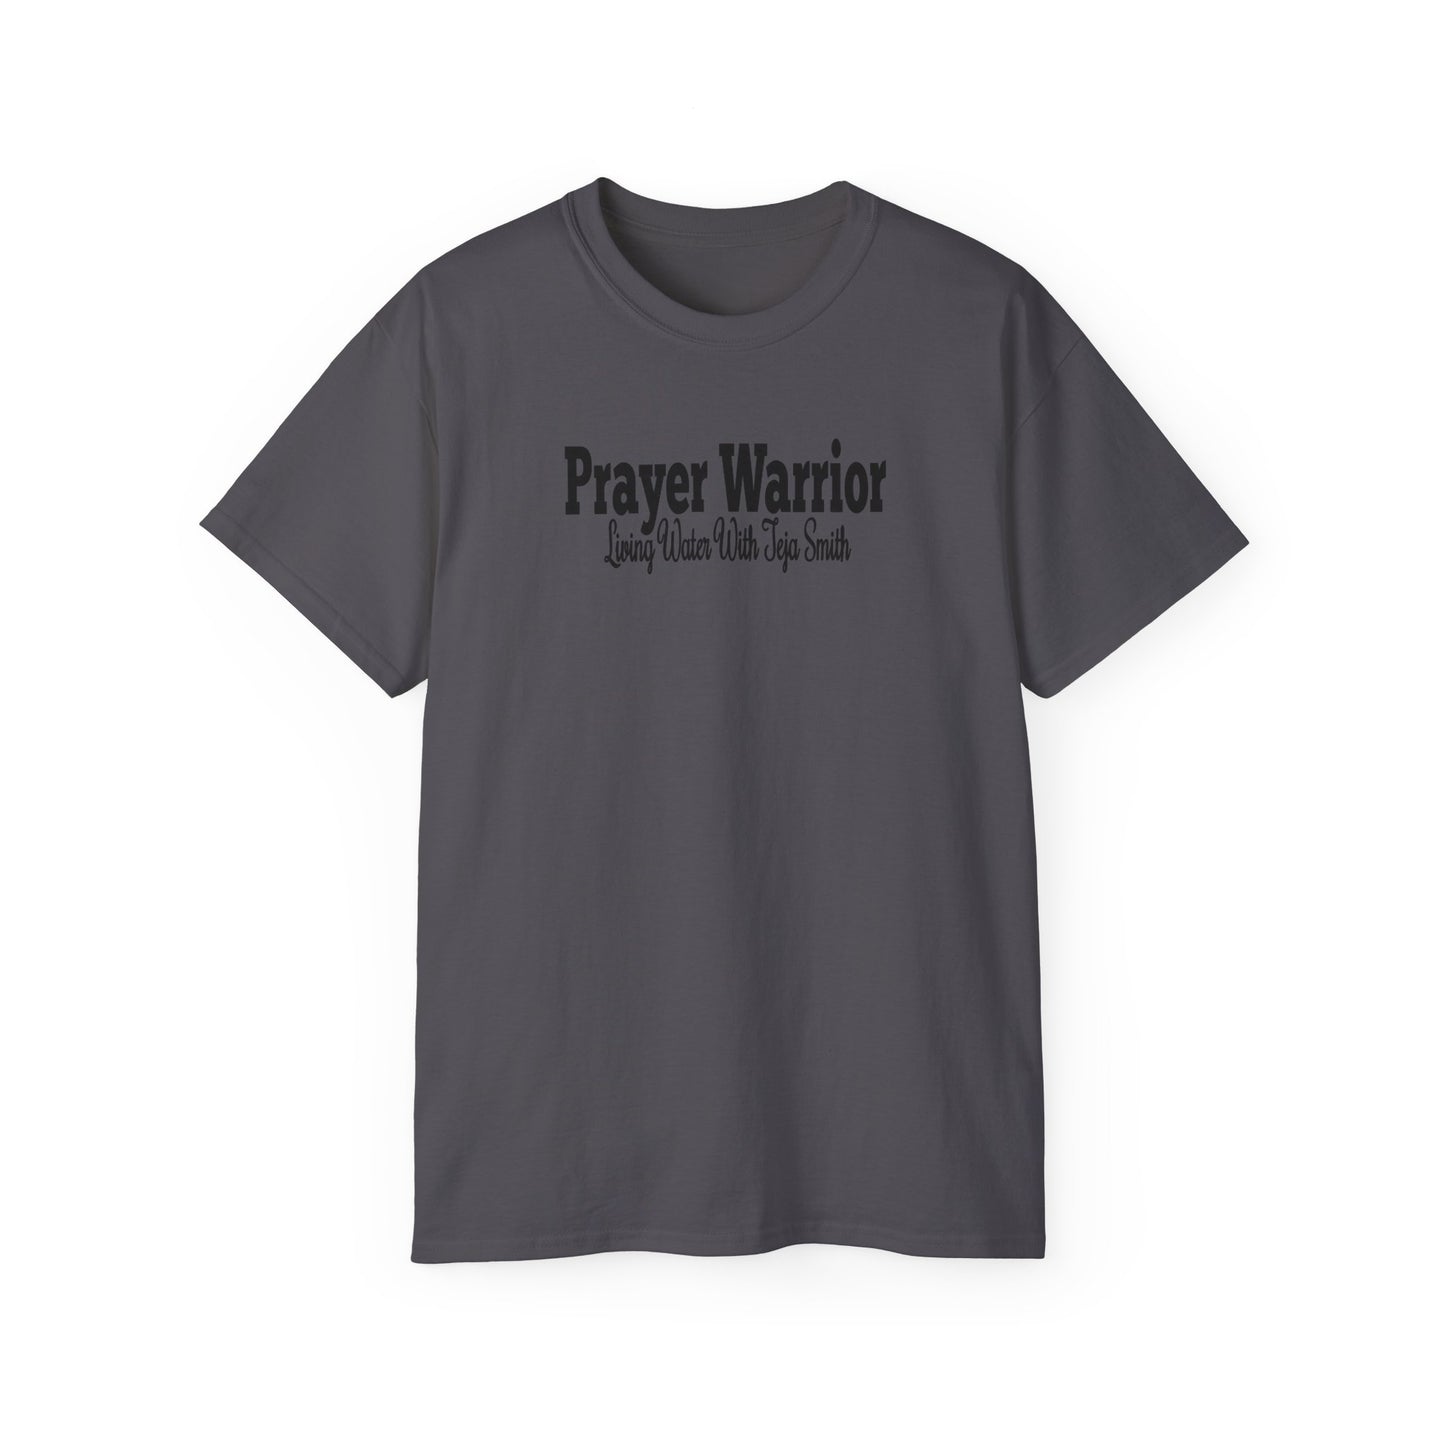 Prayer Warrior unisex Shirt